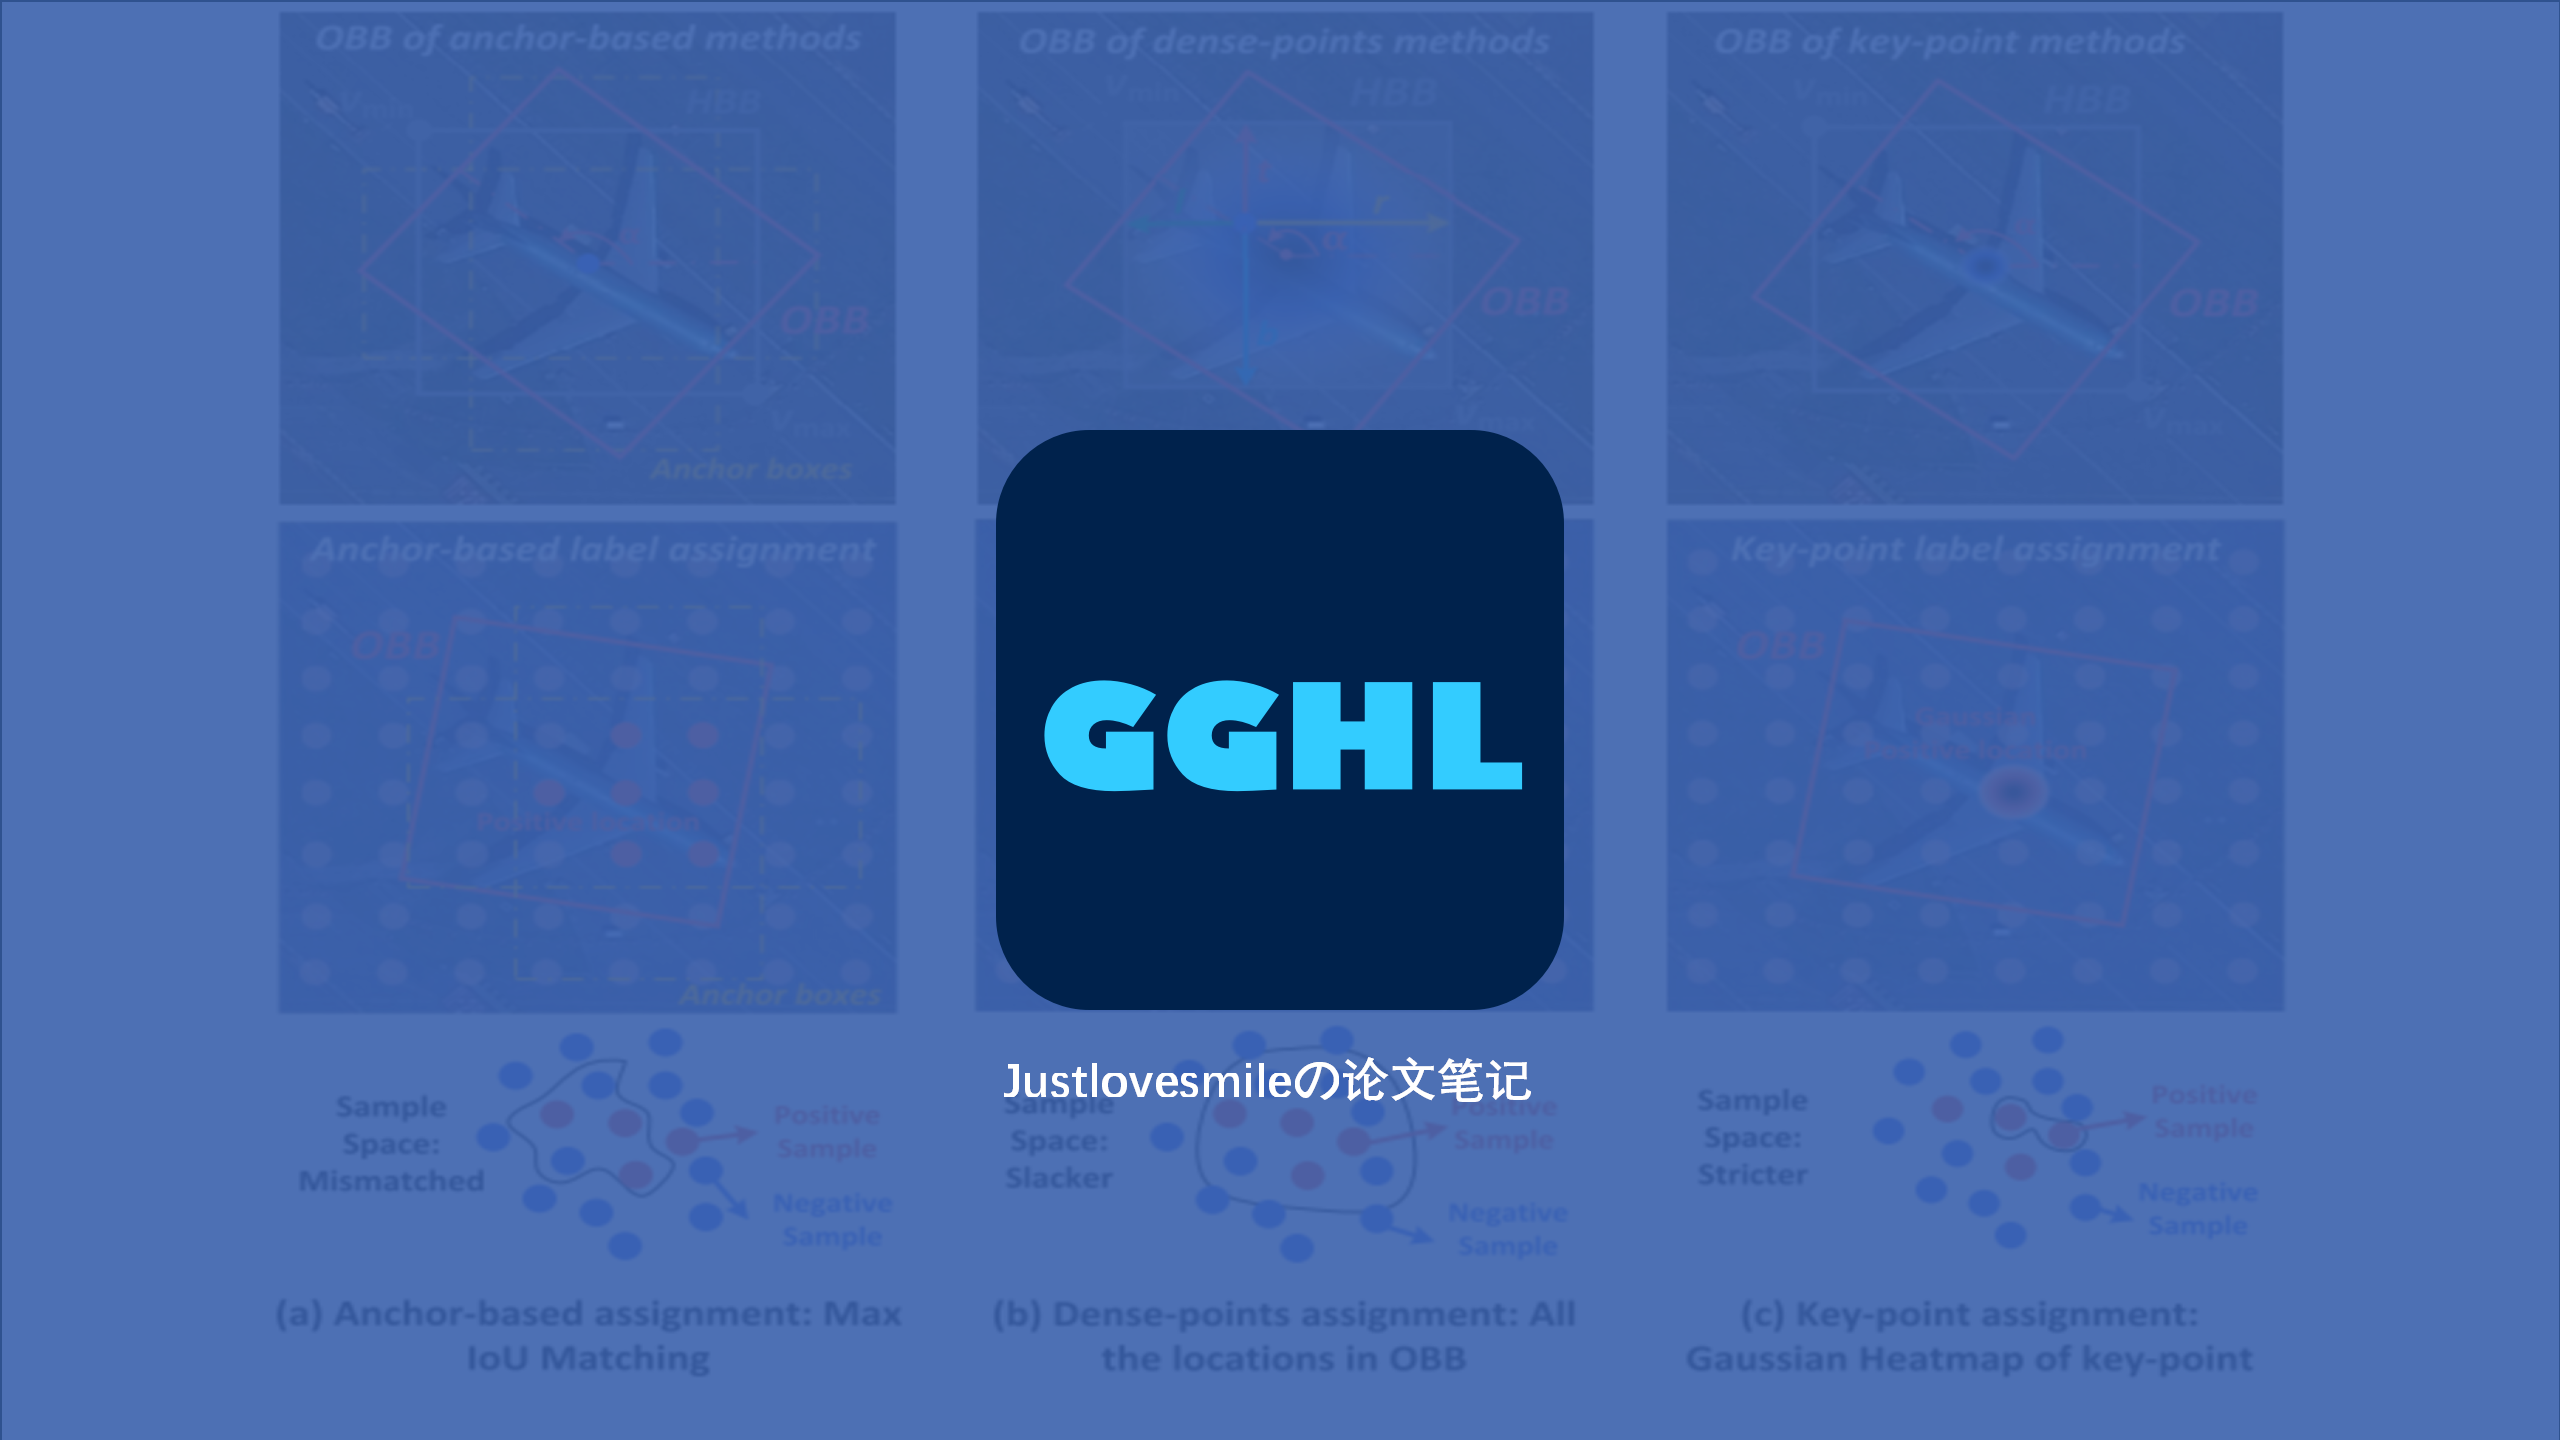 标签分配 | GGHL，面向旋转目标检测的标签分配策略